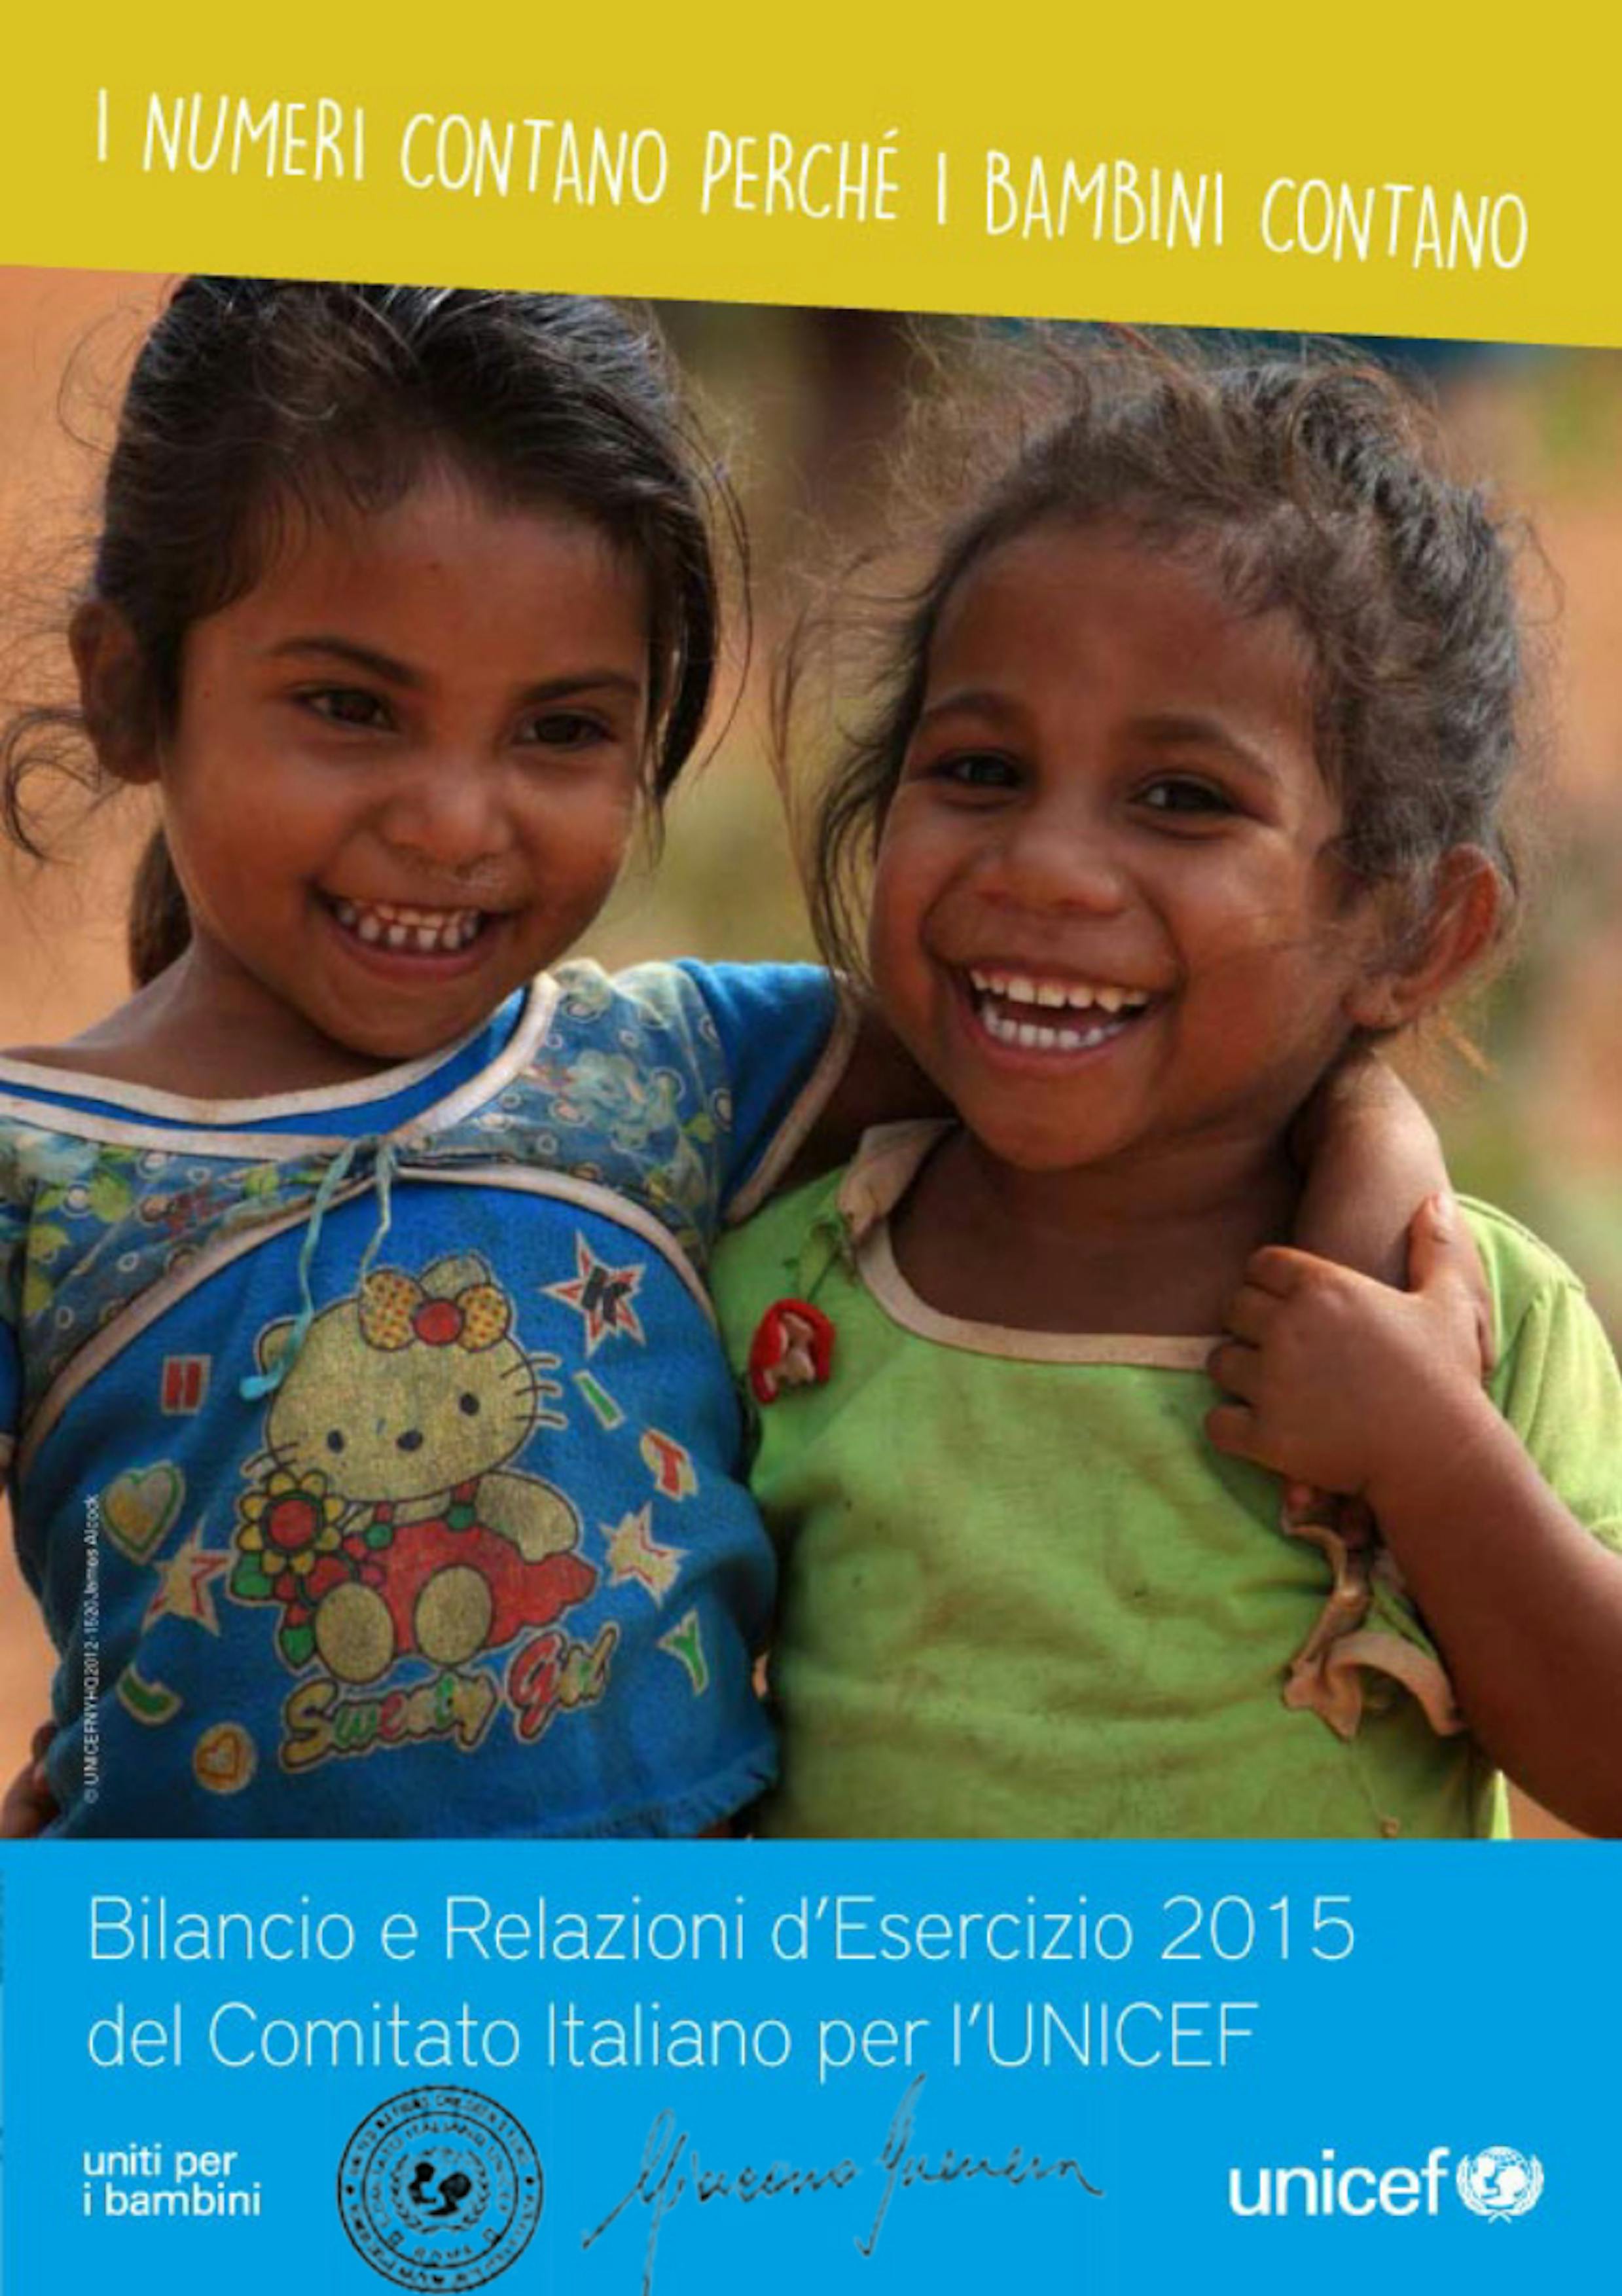 Bilancio e Relazioni d'Esercizio UNICEF Italia 2015